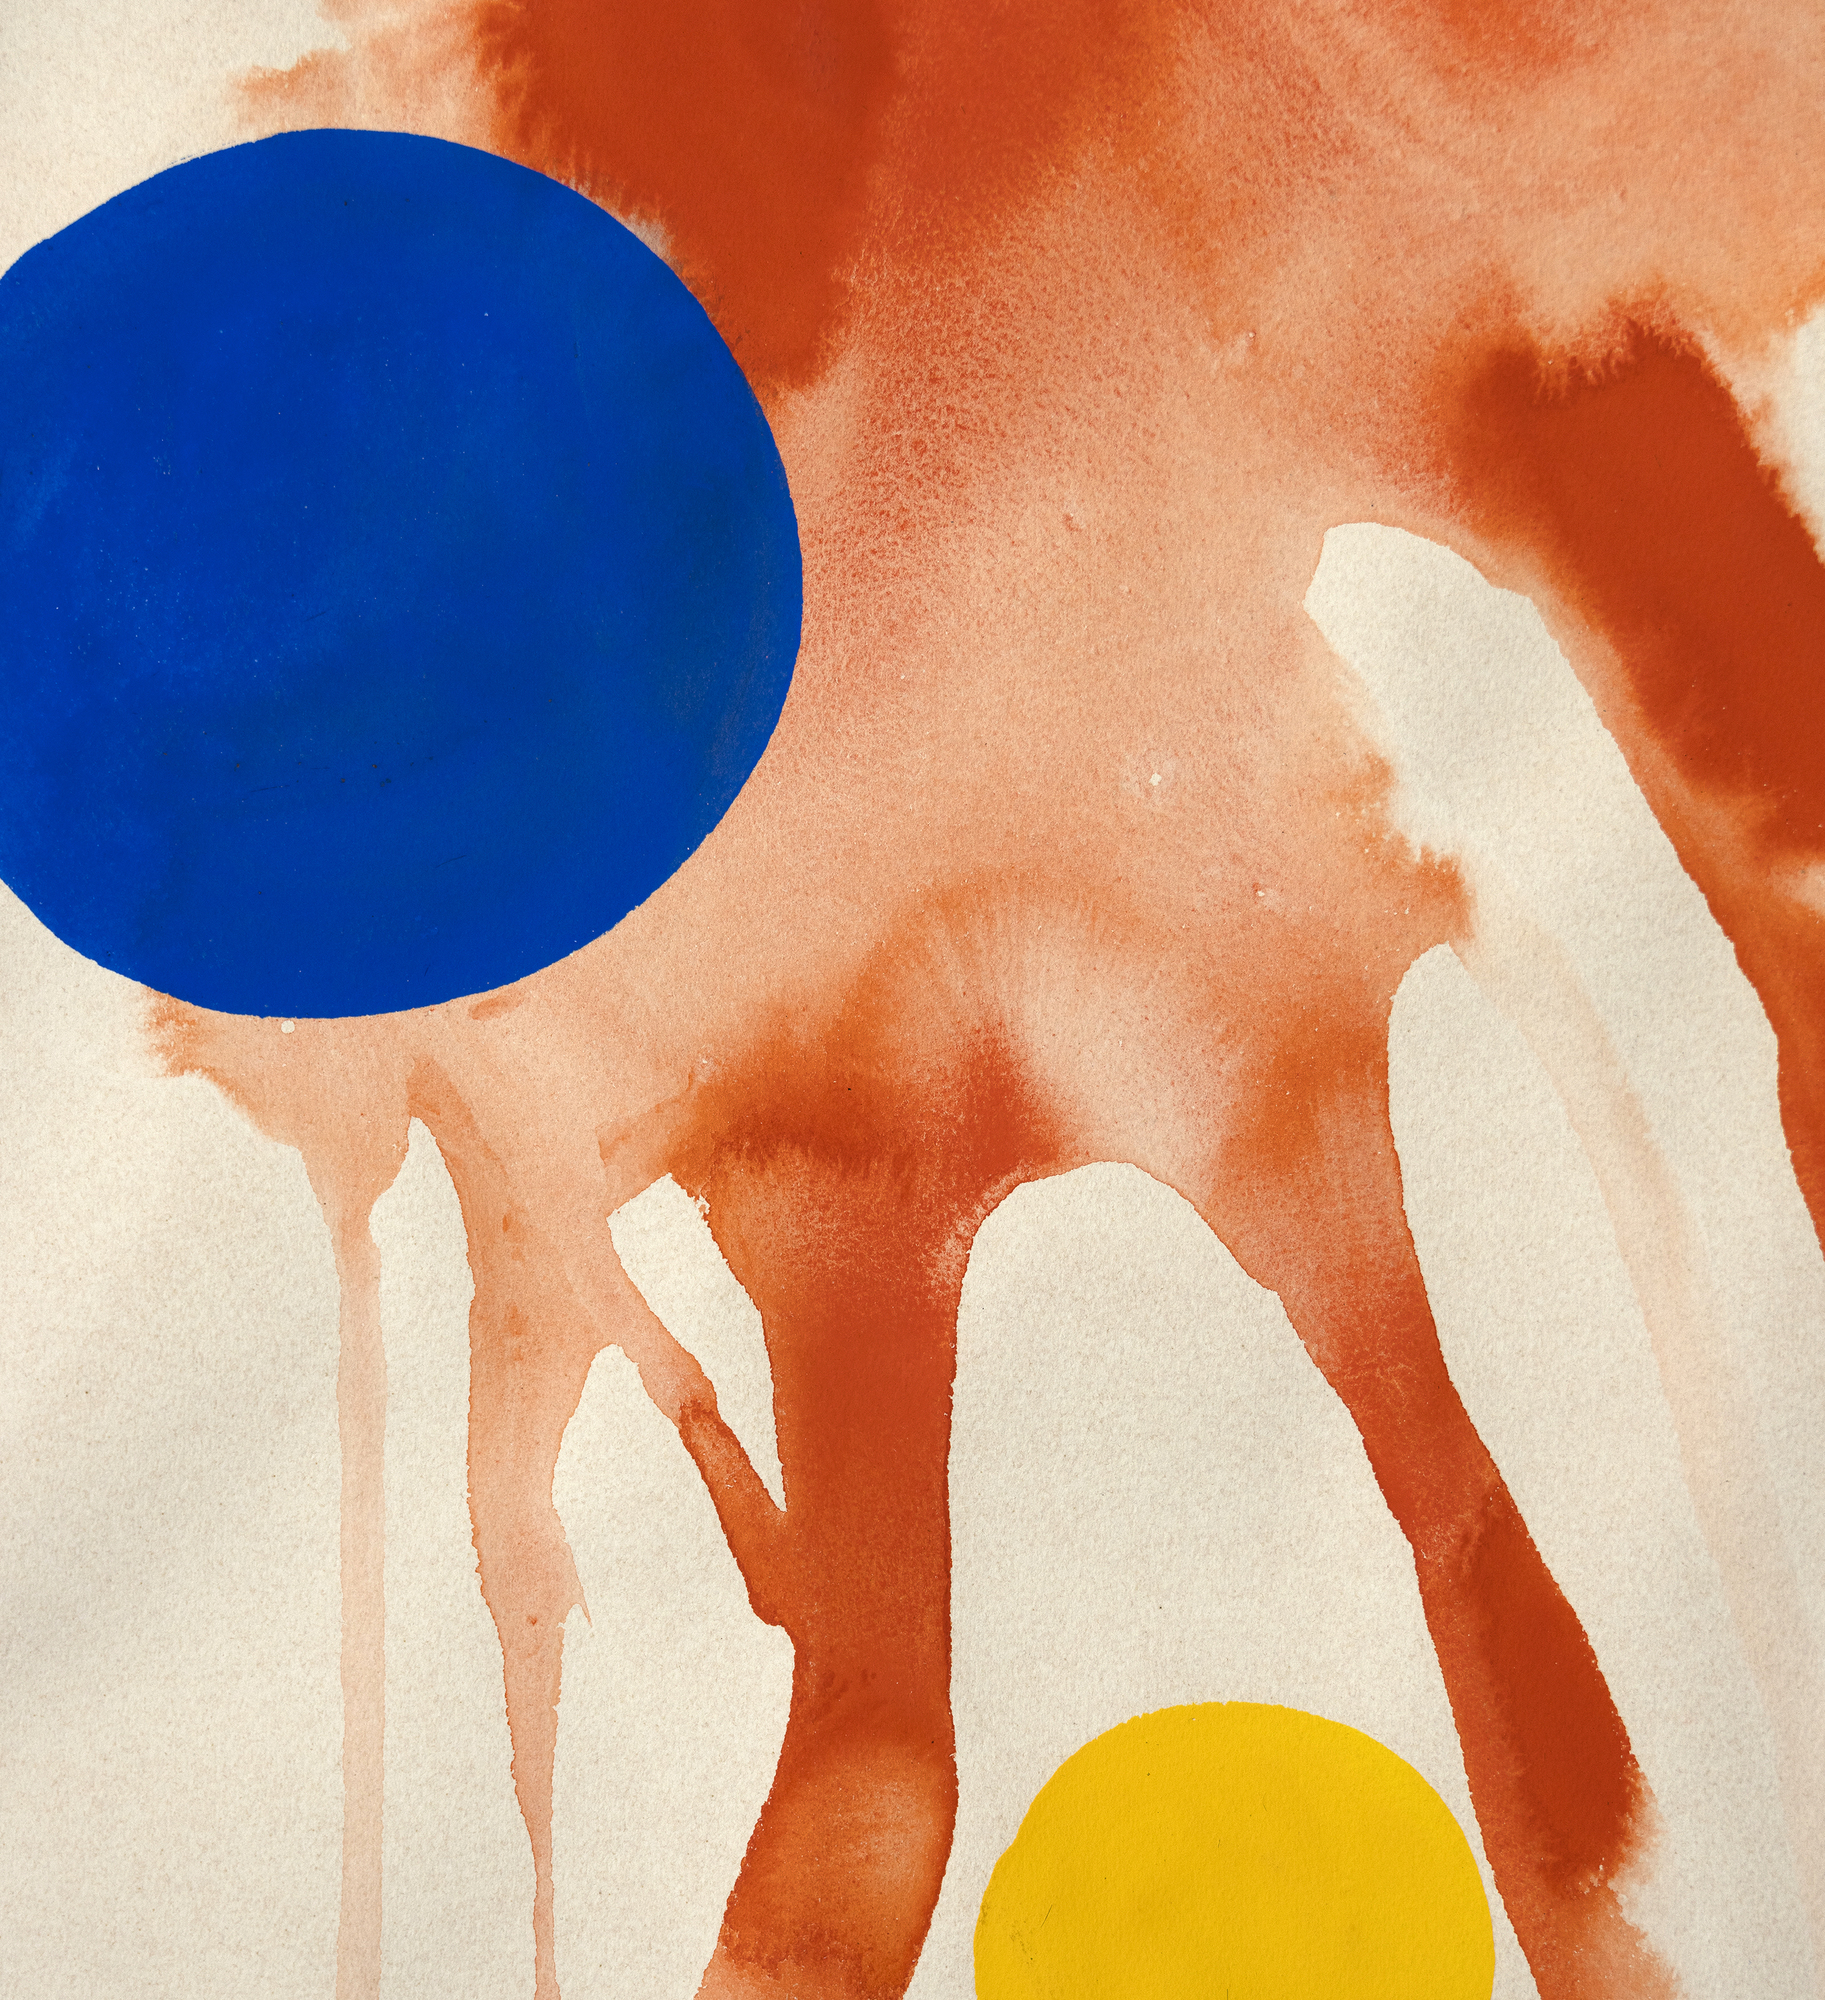 Rouge Mouille (Rojo mojado) de Alexander Calder presenta un fondo de círculos rojos, algunos dispersándose como explosiones, creando una sensación de enérgica expansión, y otros corriendo hacia abajo como si fueran estelas de un castillo de fuegos artificiales. Este animado telón de fondo está adornado con numerosas bolas redondas opacas, predominantemente negras, pero intercaladas con llamativas esferas azules, rojas y sutilmente amarillas. La colocación estratégica de las esferas de colores frente a los rojos explosivos capta el asombro y el espectáculo de un espectáculo de fuegos artificiales, transformando el cuadro en una metáfora visual de este acontecimiento deslumbrante y festivo. La obra resuena con emoción y vitalidad, encapsulando su belleza efímera en un medio estático.